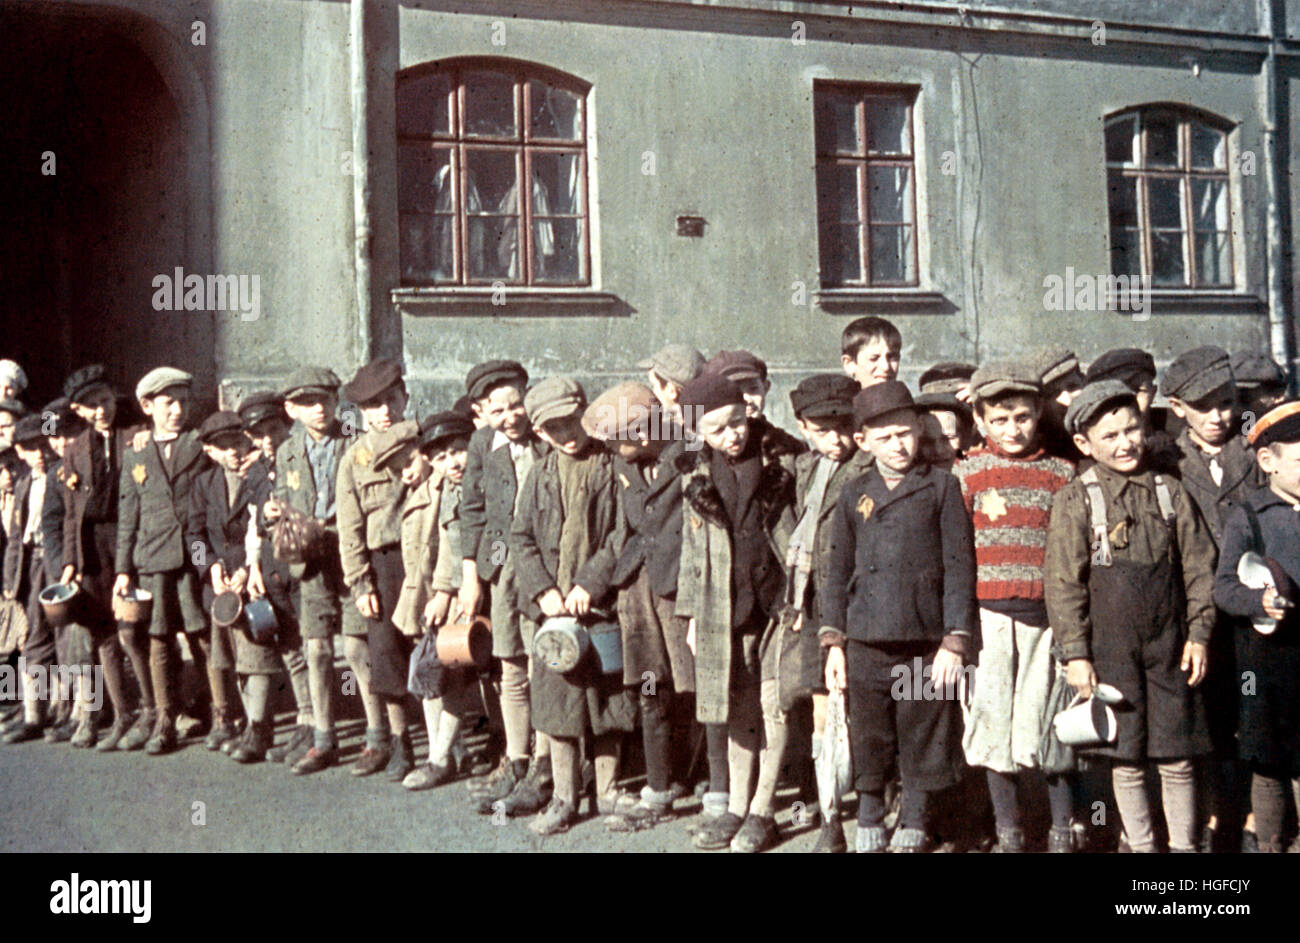 Ghetto Lodz, Litzmannstadt, Jewish children in the ghetto, Poland 1940, World War II, Stock Photo